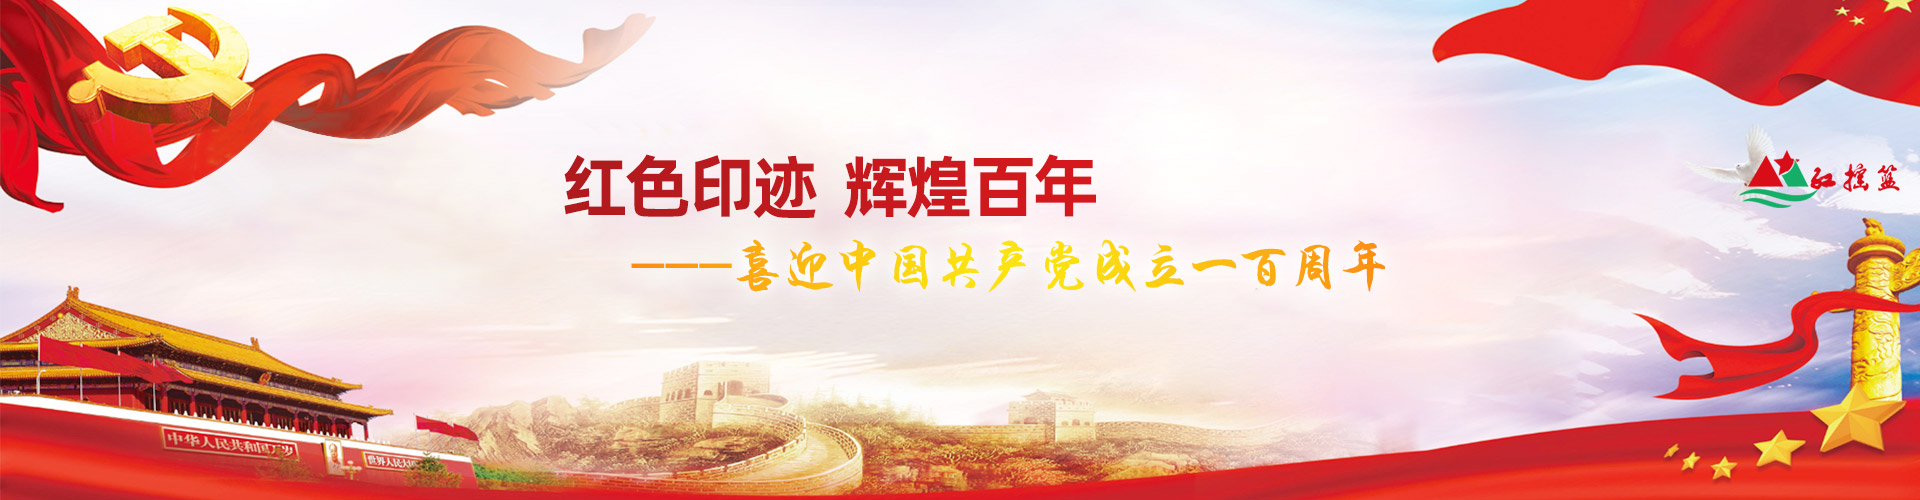 红色印迹 辉煌百年 | 喜迎中国共产党成立一百周年